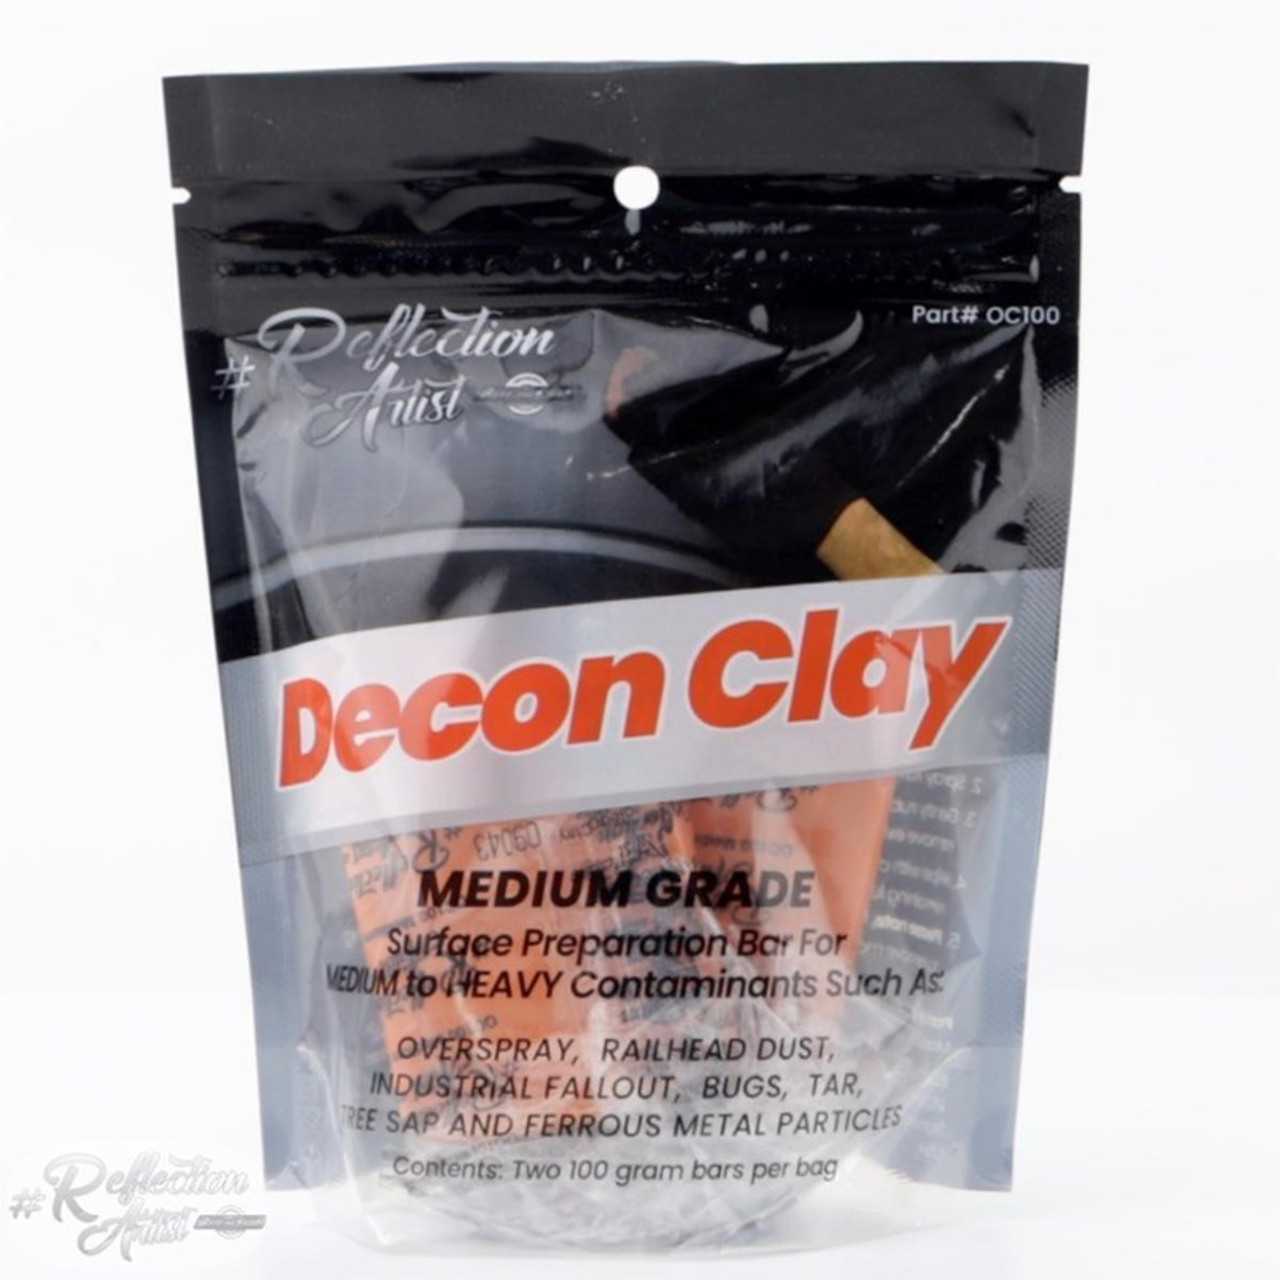 Medium Grade Orange Decon Clay